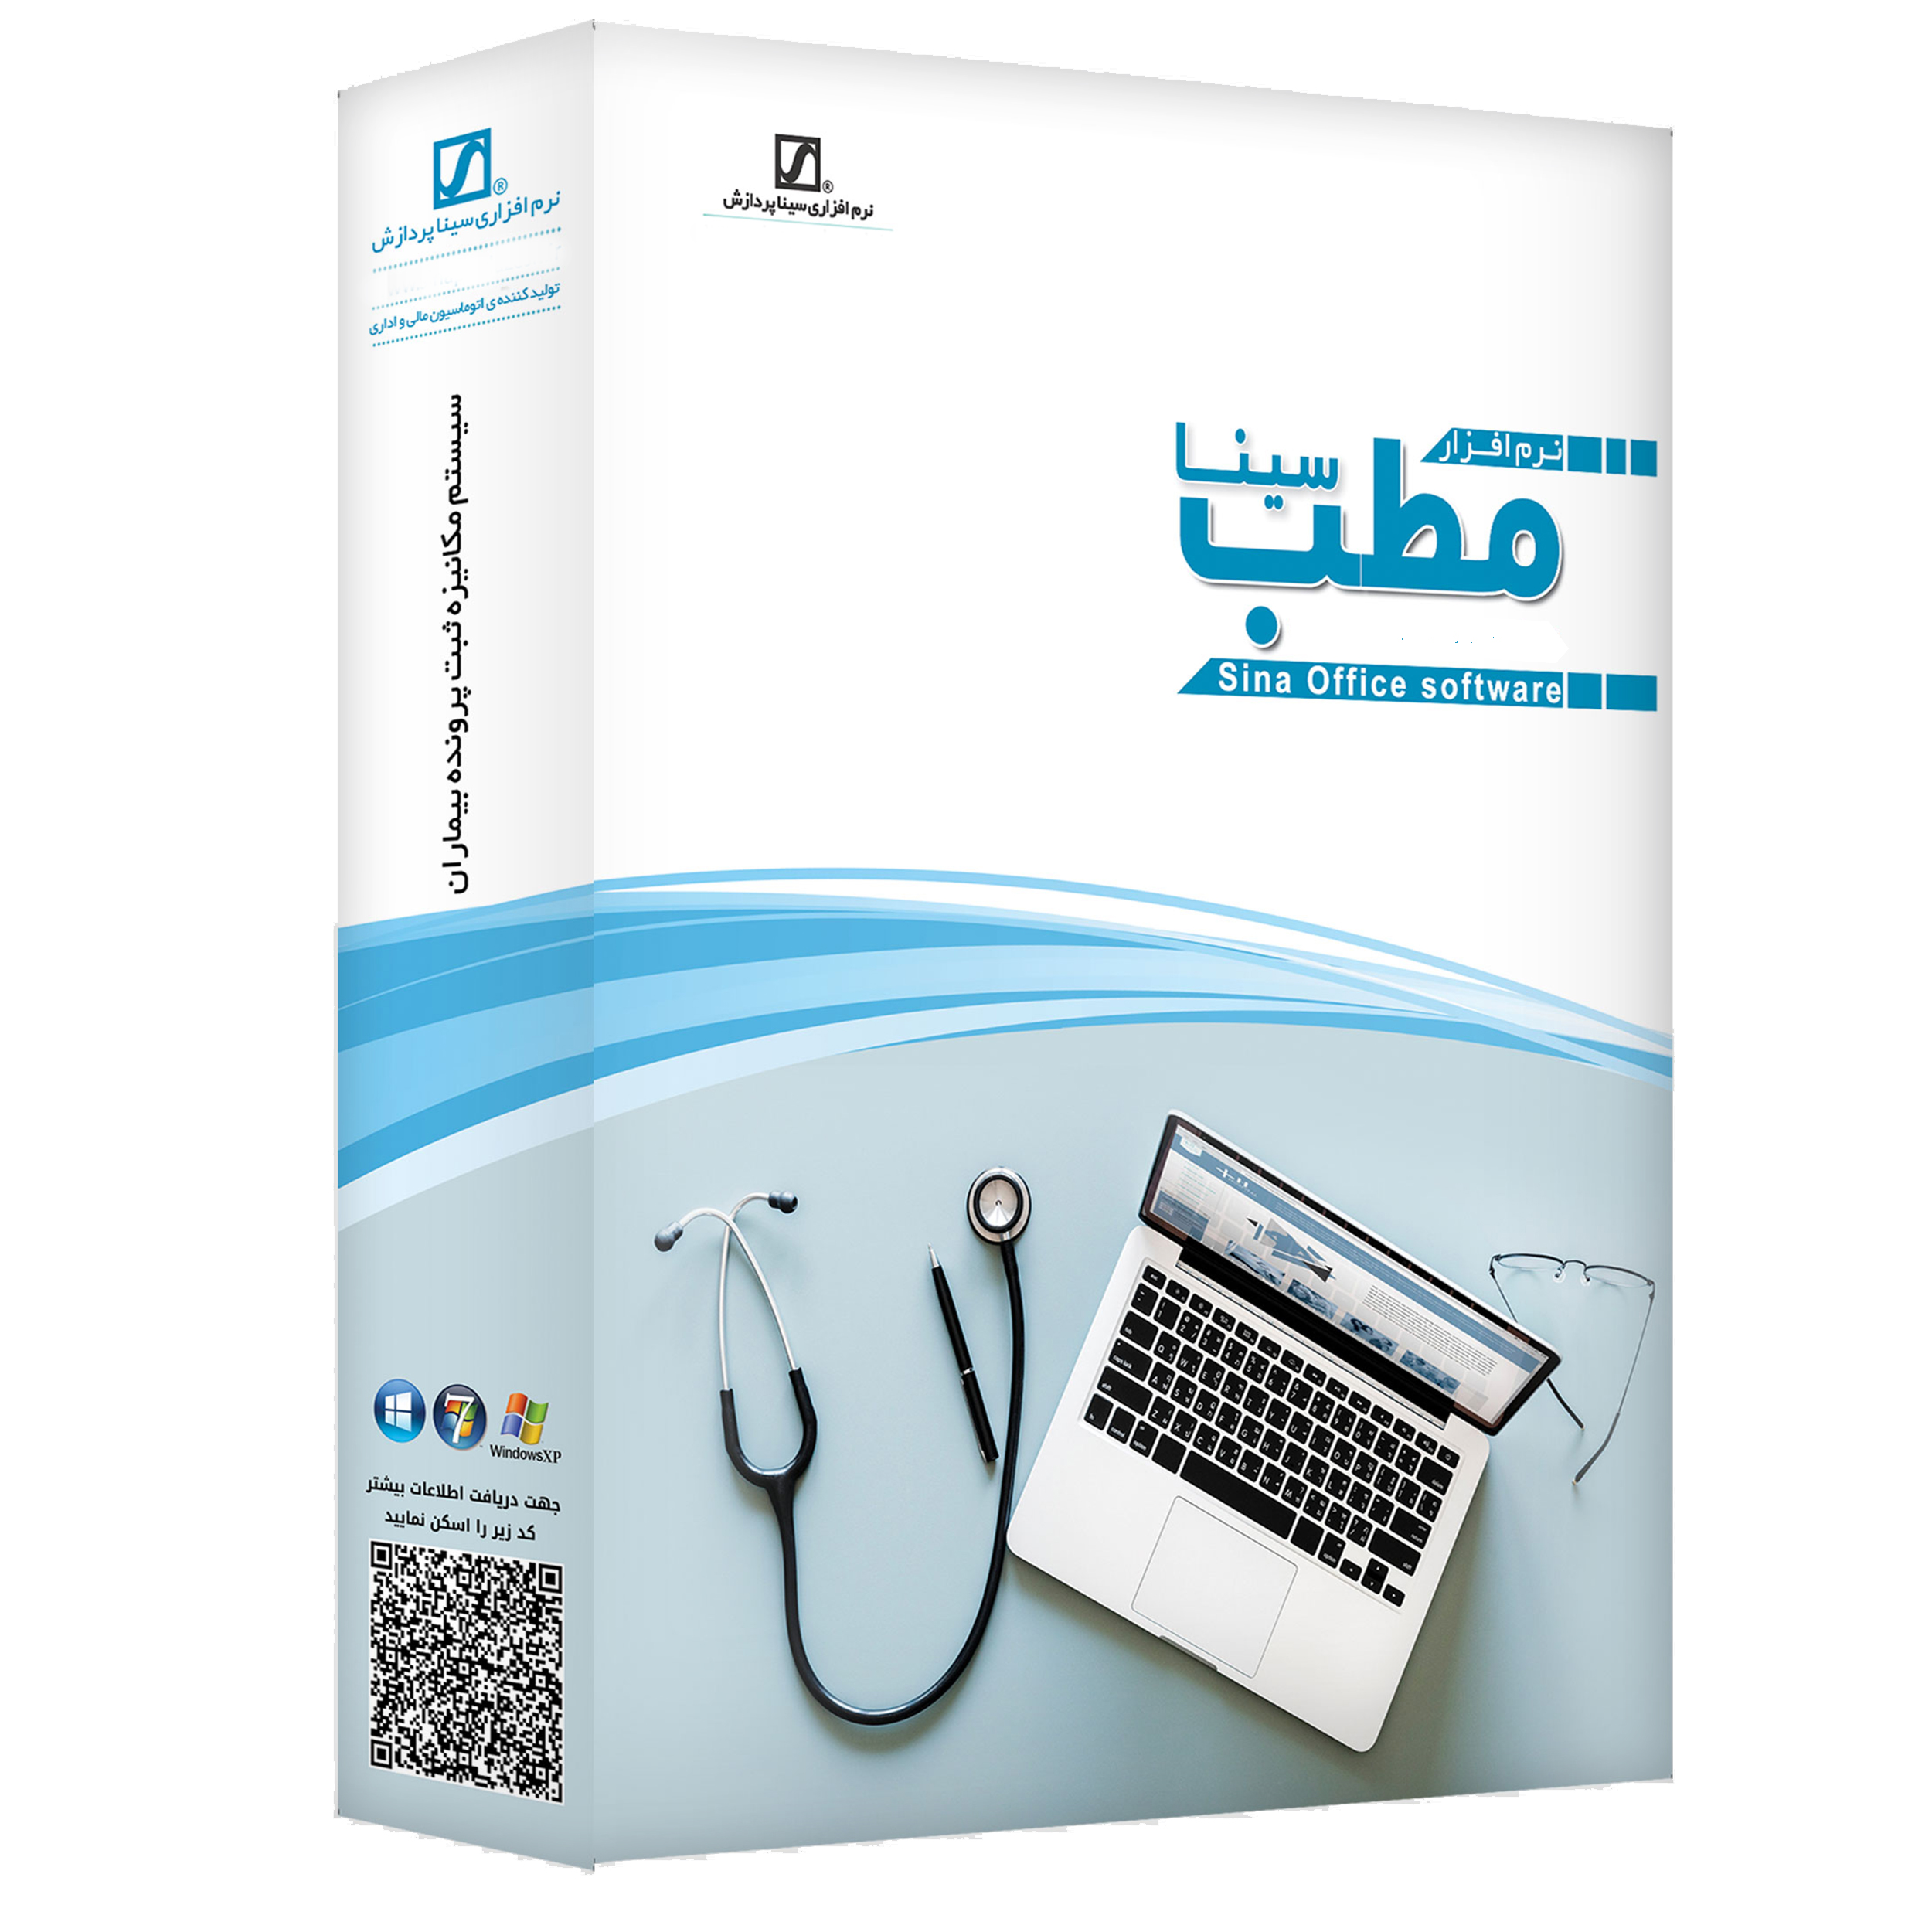  نرم افزار حسابداری مطب نسخه تخصصی جراح عمومی نشر سیناپردازش